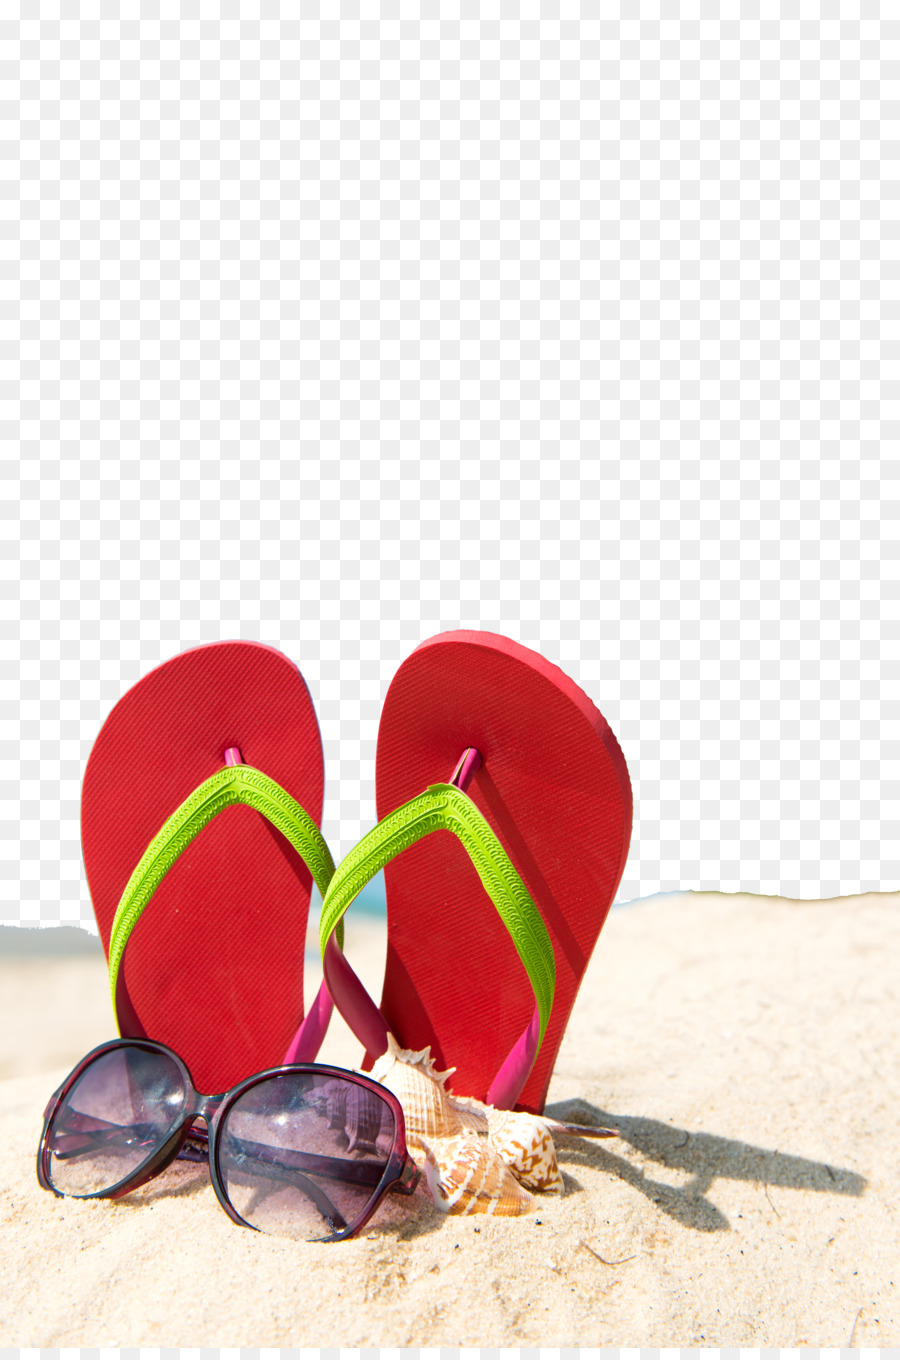 Pantofola In Estate Spiaggia Di Sabbia, Carta Da Parati - Estate spiaggia poster di sfondo